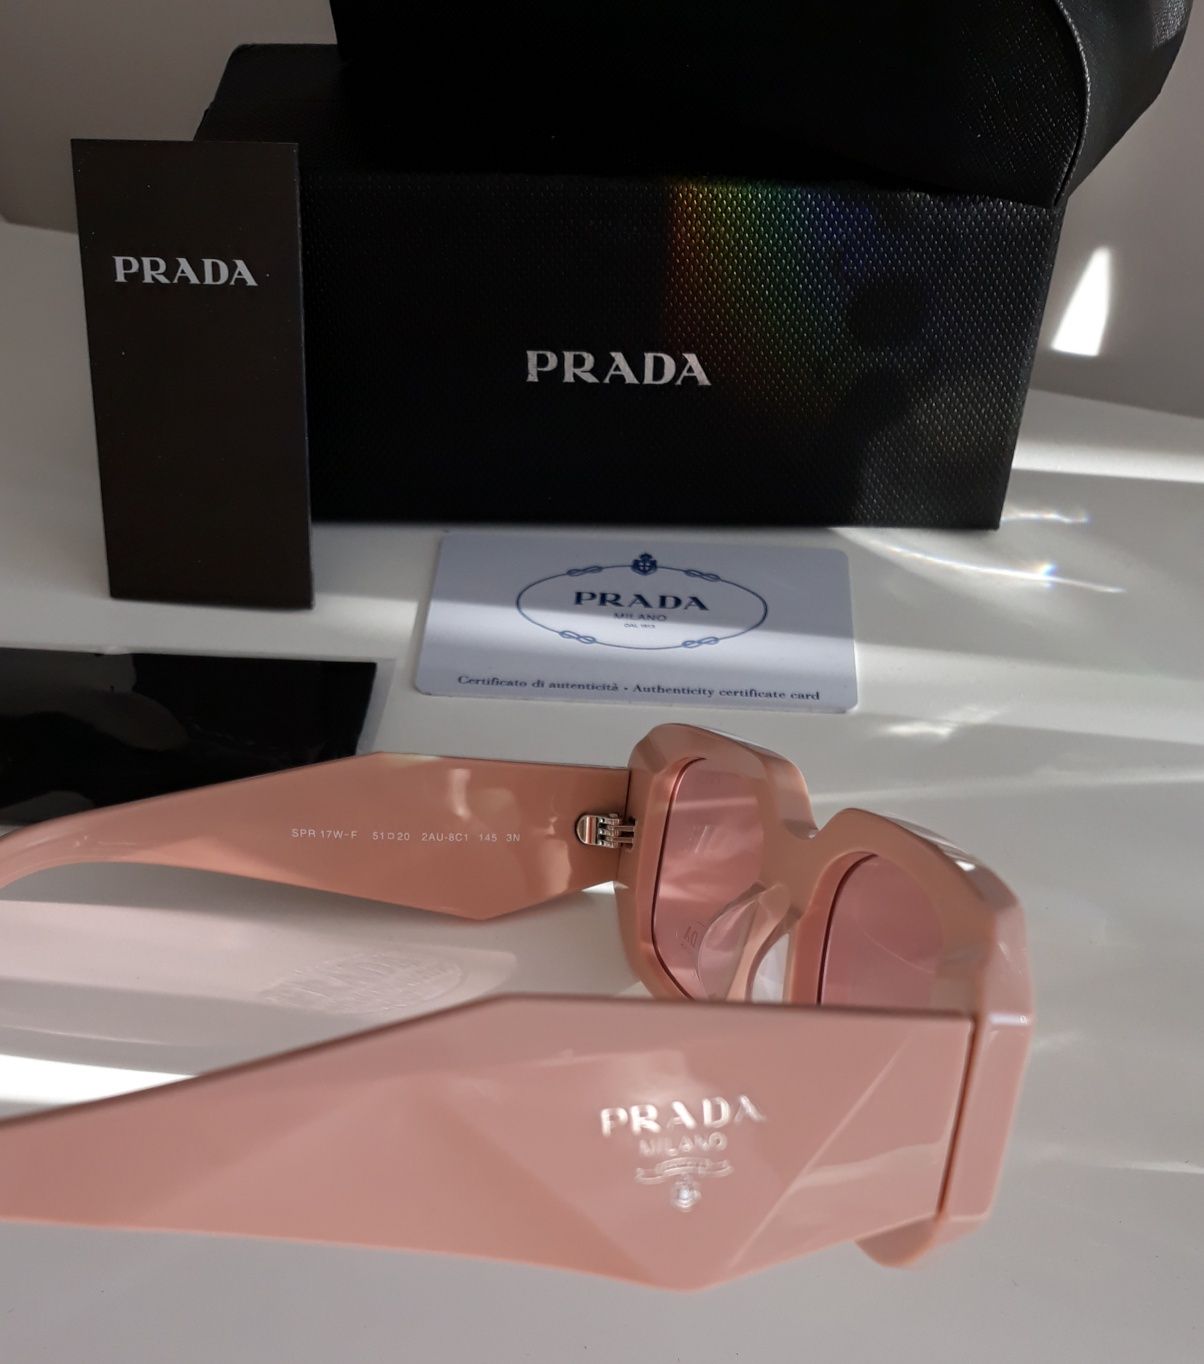 Okulary przeciwsłoneczne Prada różowe jakość Premium nowe